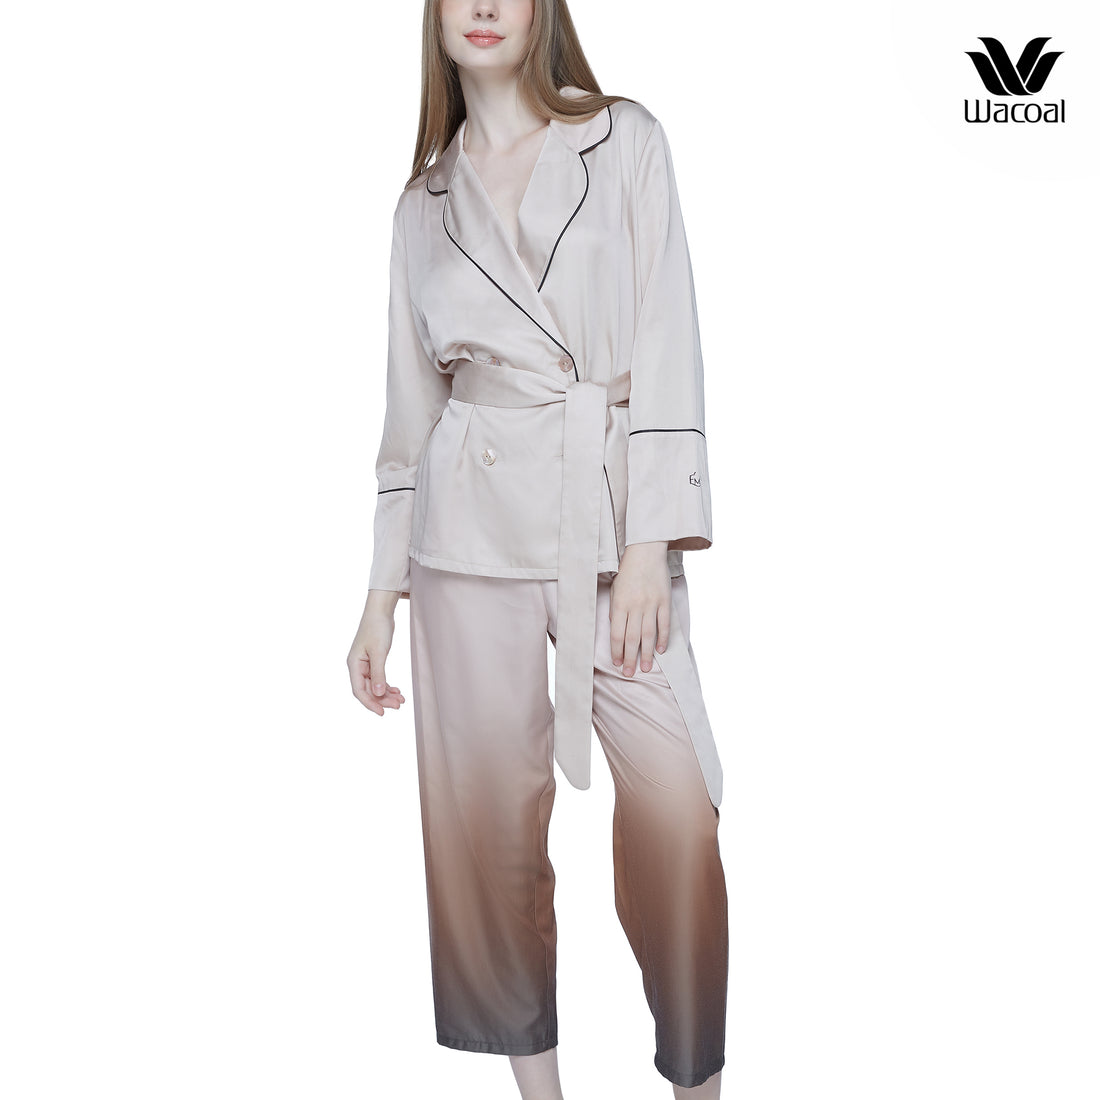 Wacoal Sleepwear ชุดนอนแขนยาว ขายาว ทรงแฟชั่น รุ่น WN7E46 สีเบจ (BE)